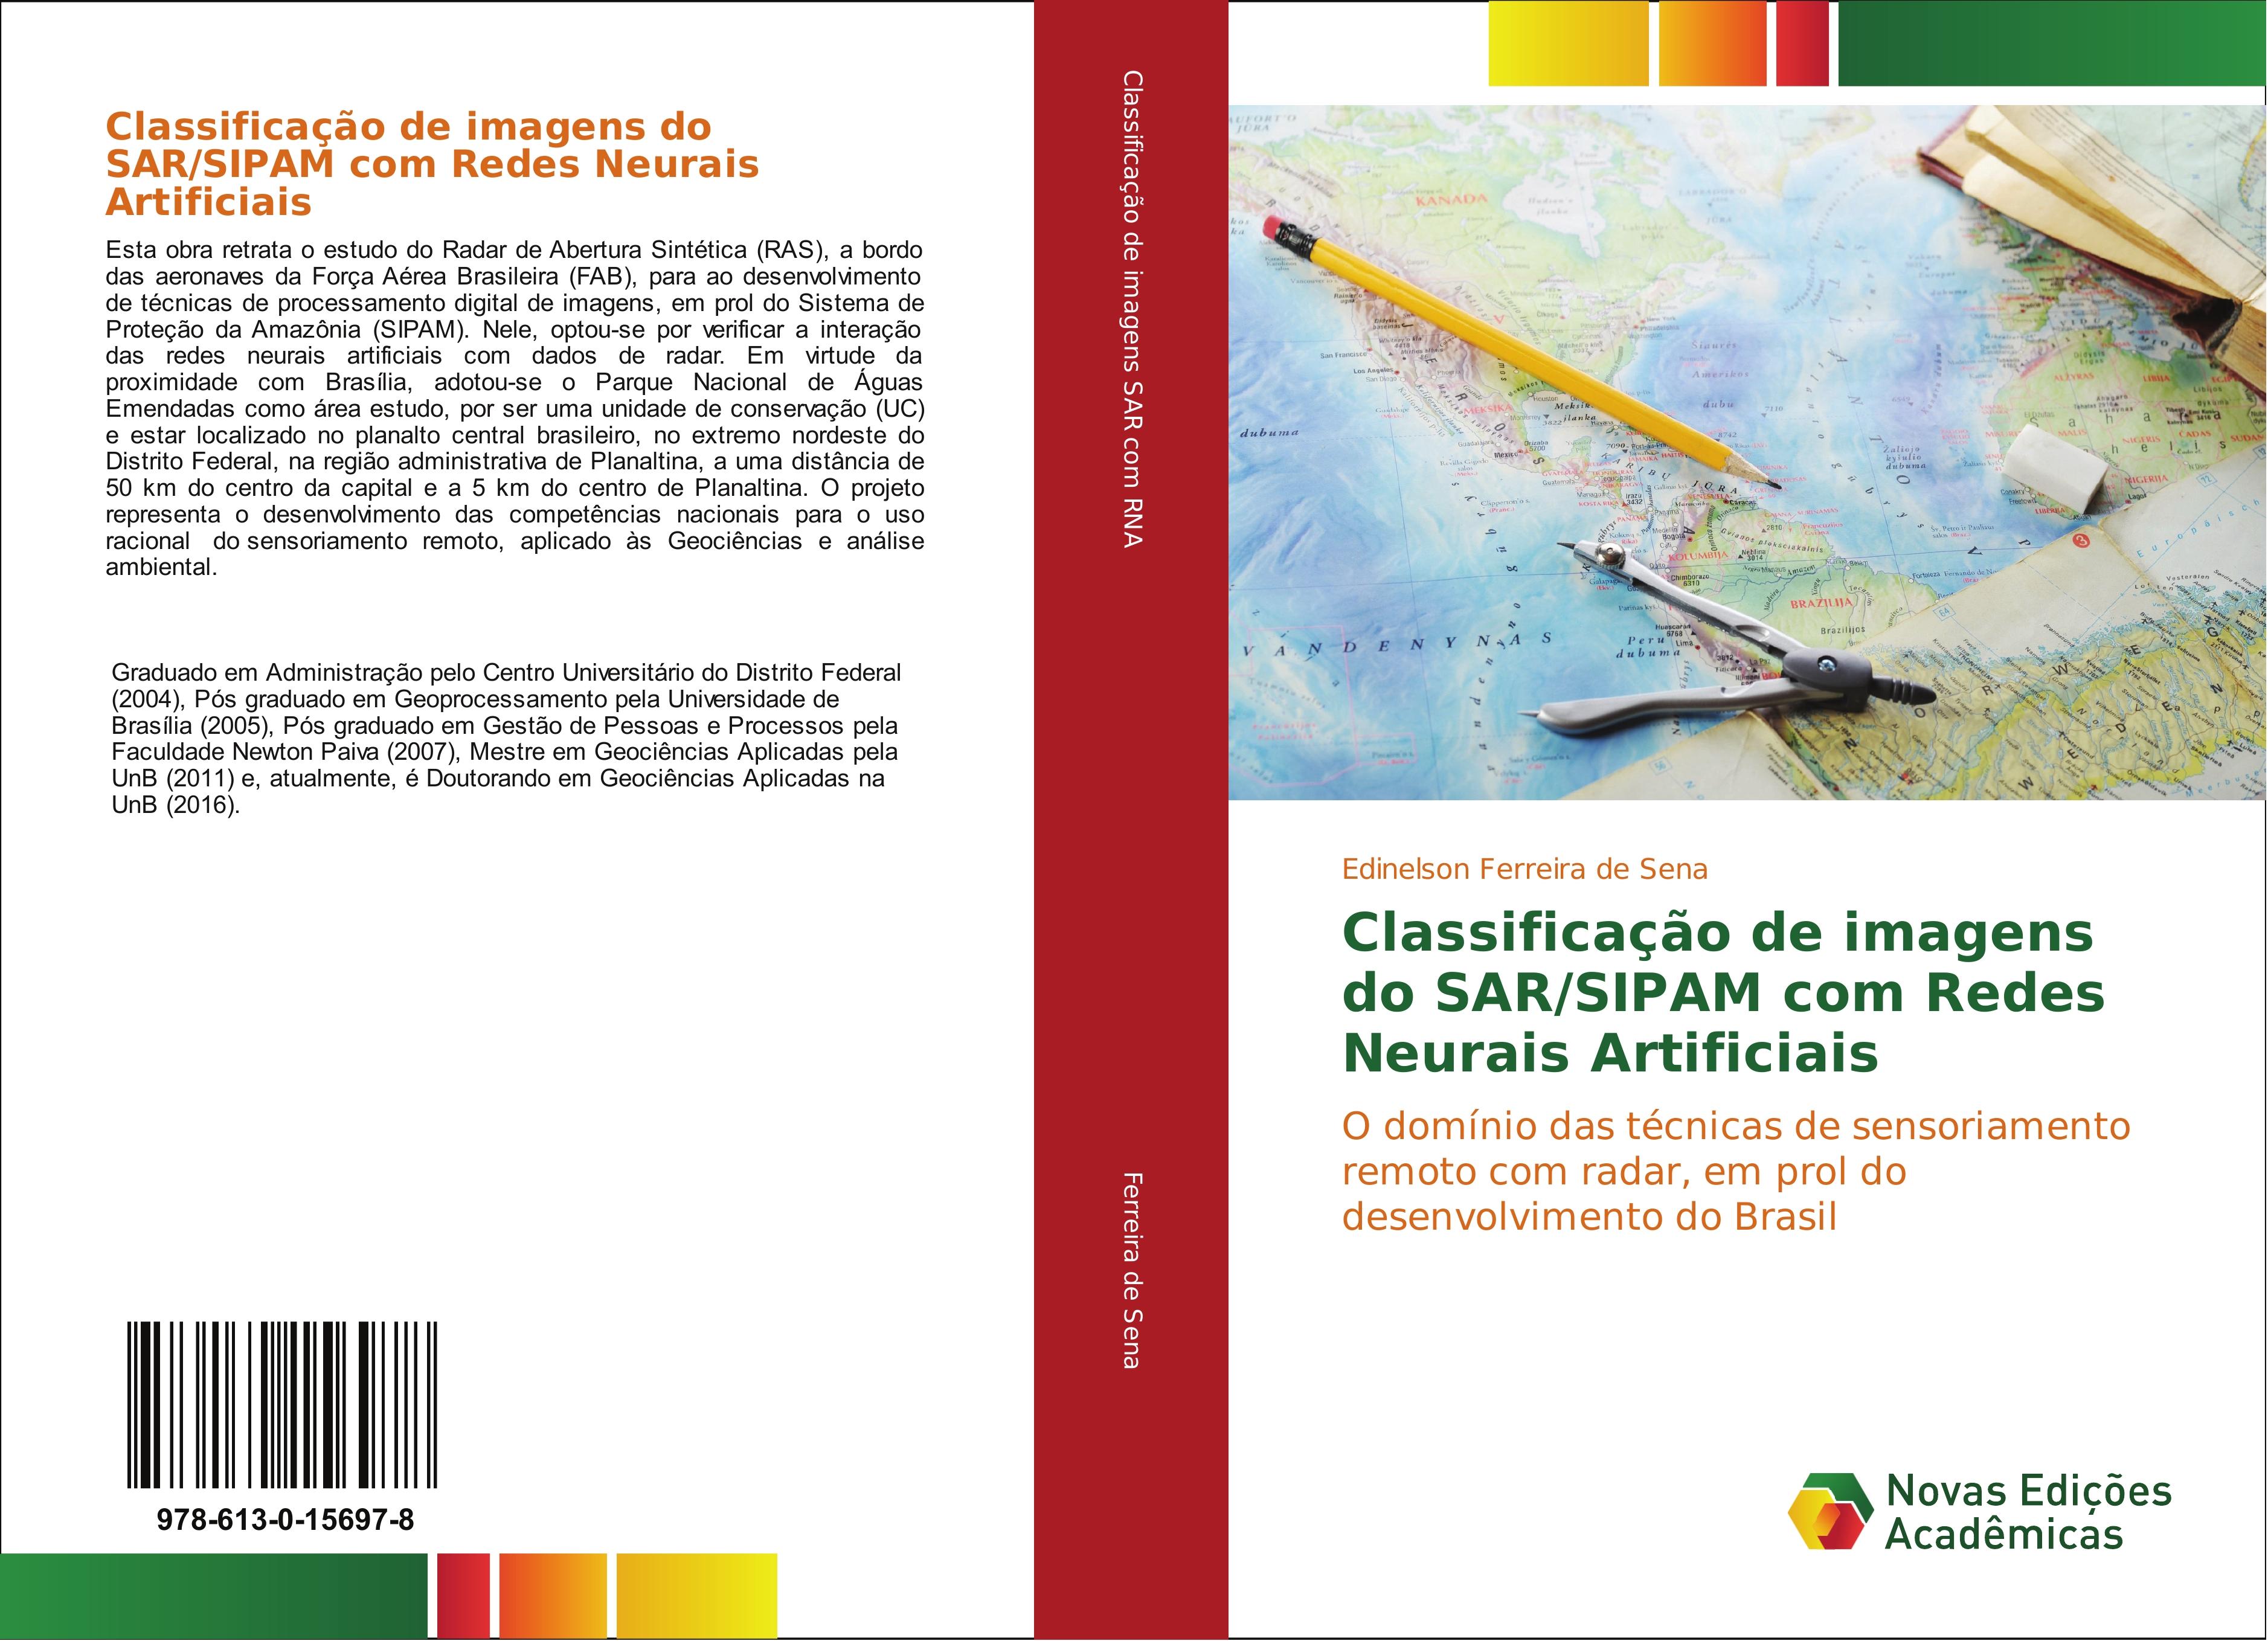 Classificação de imagens do SAR/SIPAM com Redes Neurais Artificiais / O domínio das técnicas de sensoriamento remoto com radar, em prol do desenvolvimento do Brasil / Edinelson Ferreira de Sena / Buch - Ferreira de Sena, Edinelson